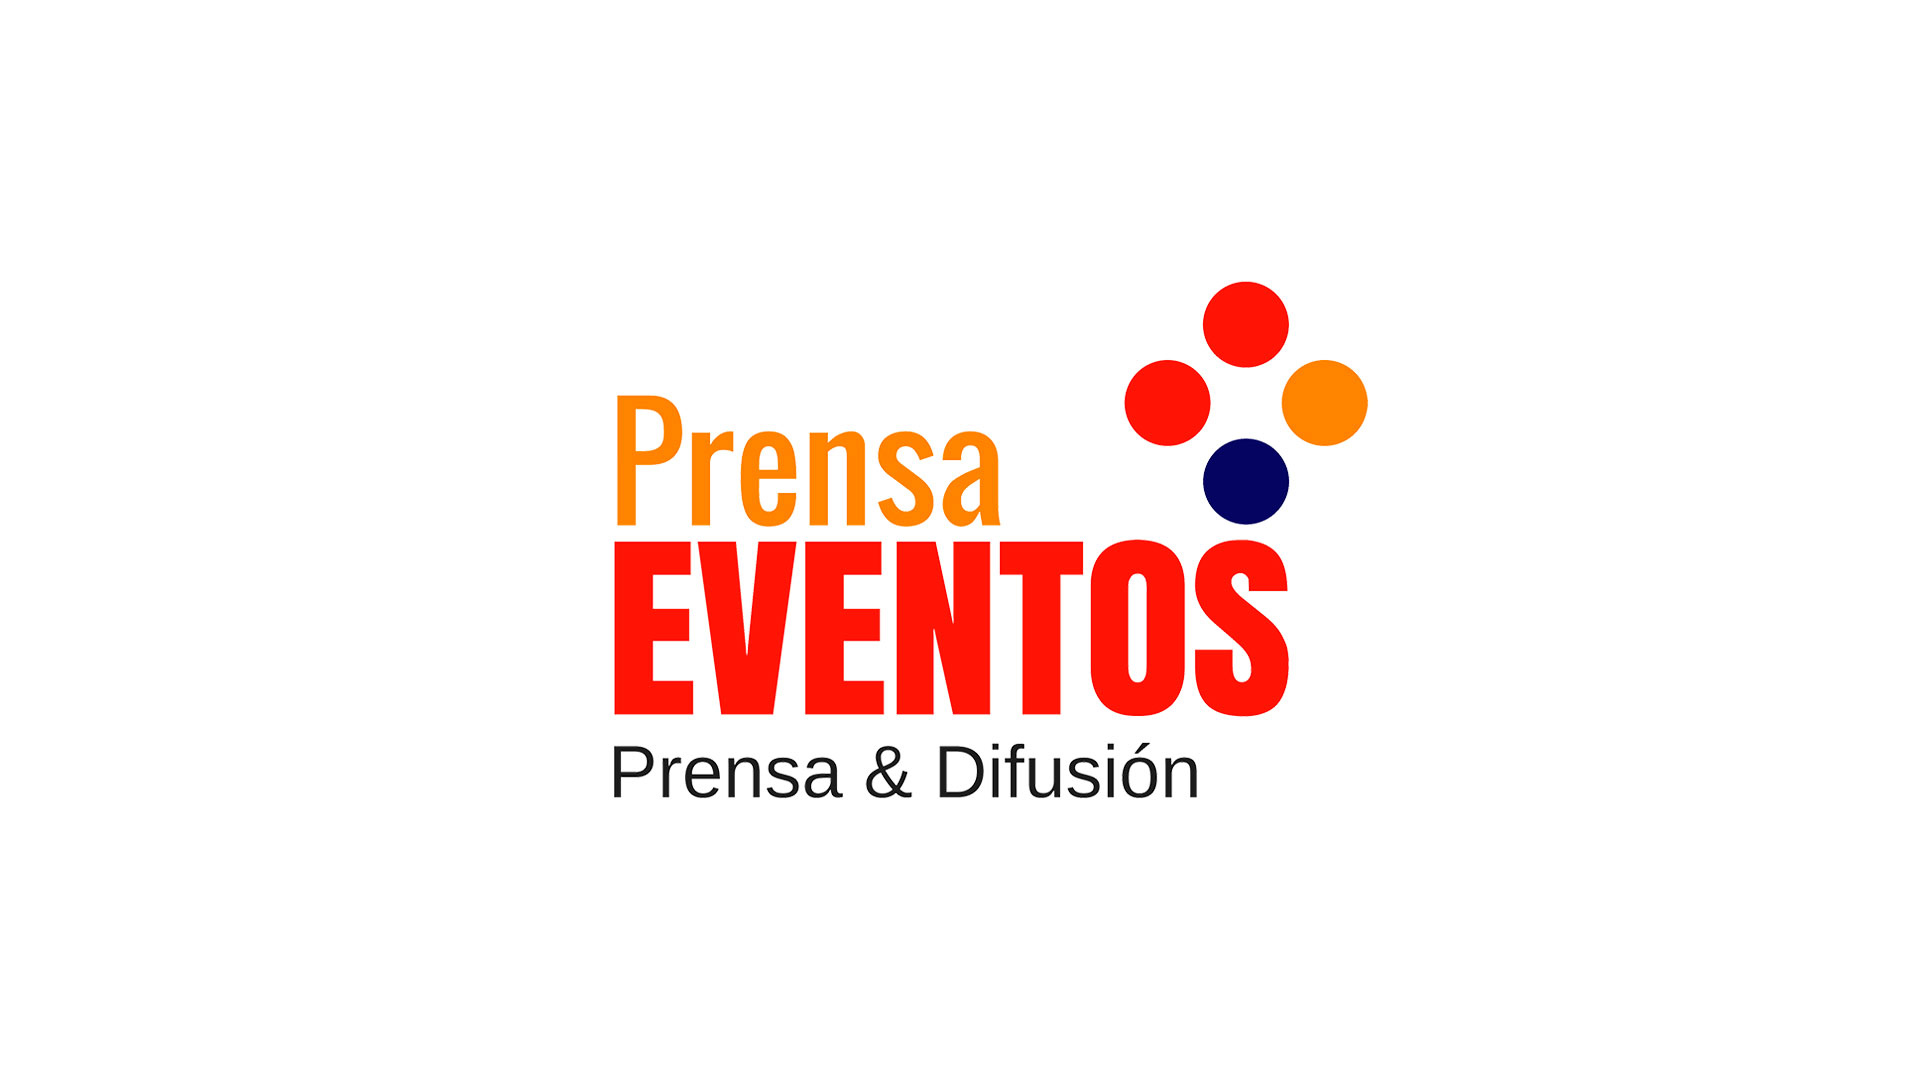 Prensa & Eventos